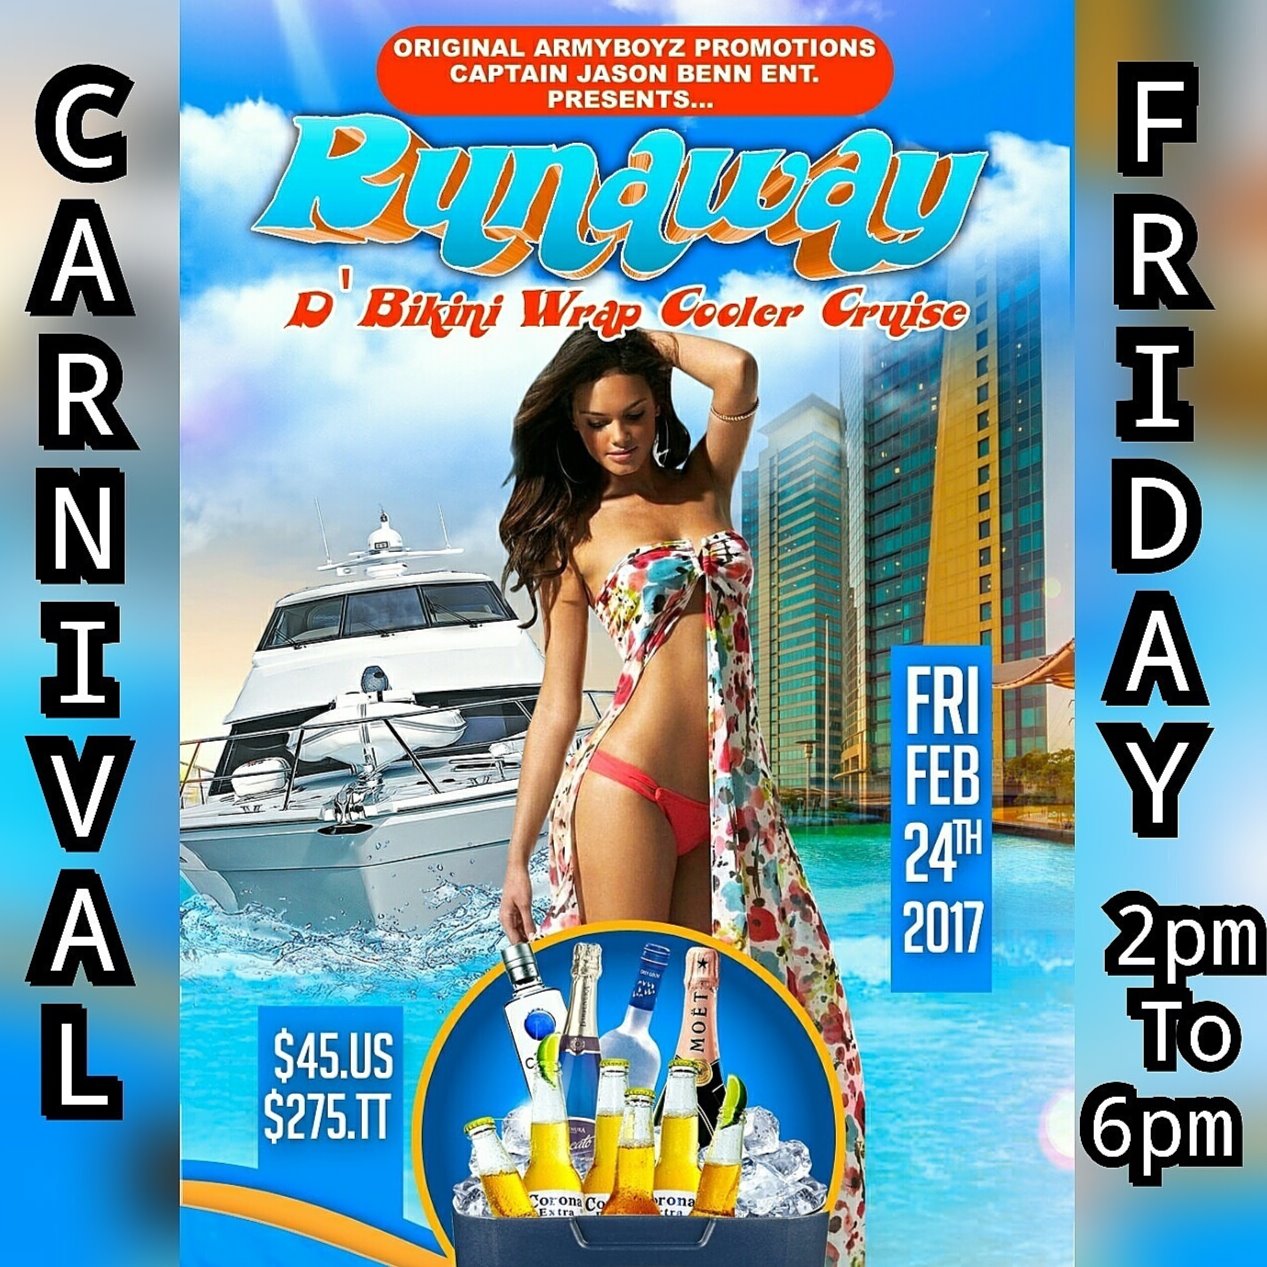 Carnival Friday Bikini Wrap Cooler Cruise (Army Boyz & Captain Jason Benn)